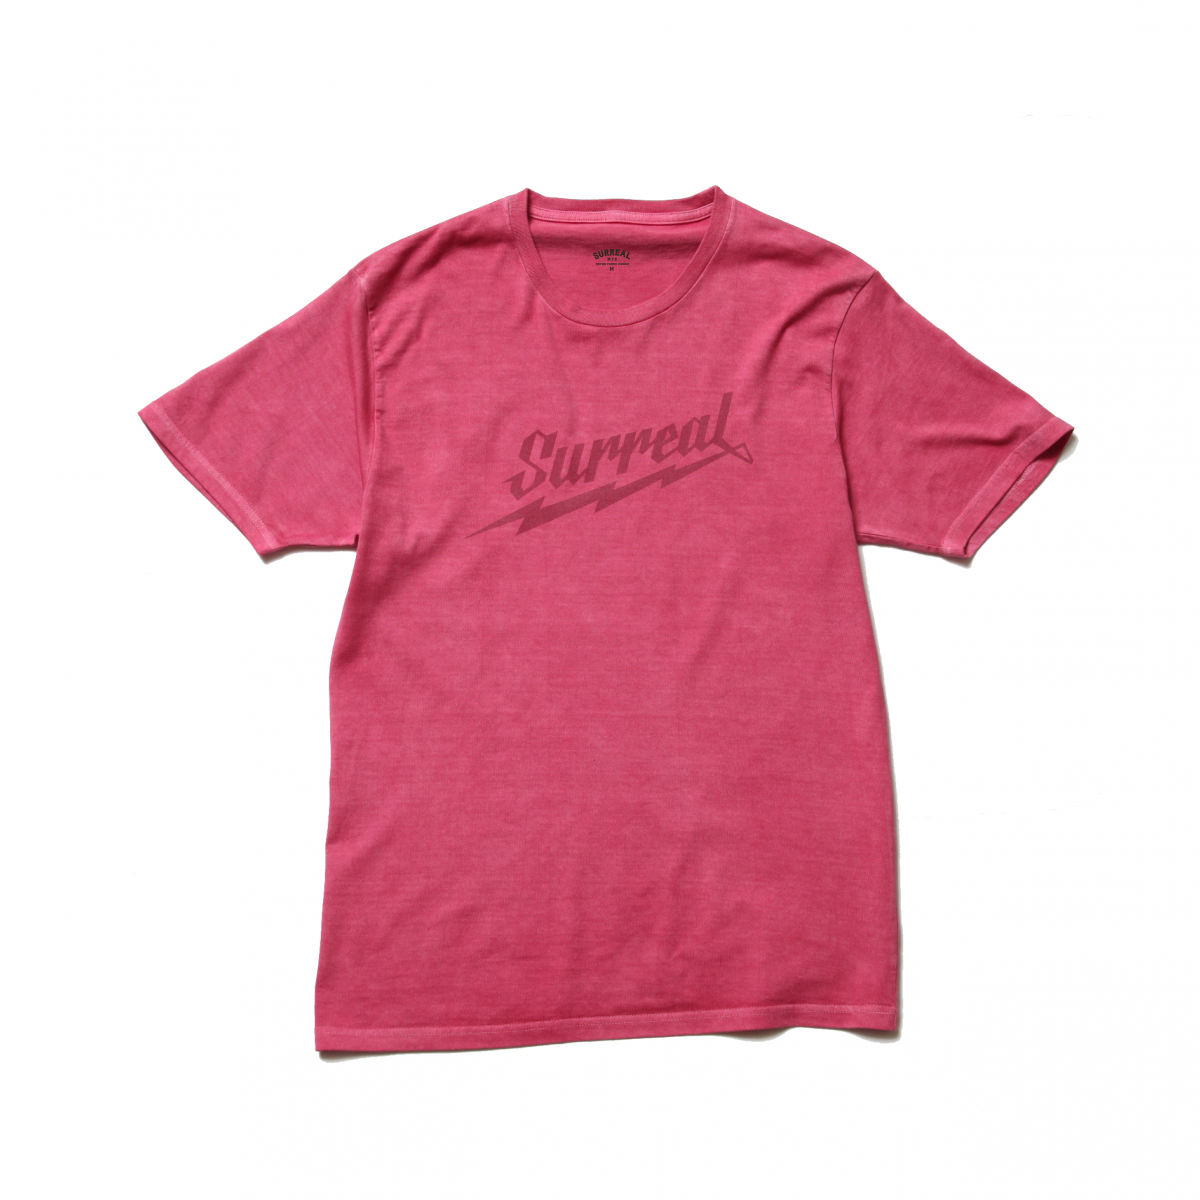 Mason_Pigment Dye T-Shirt